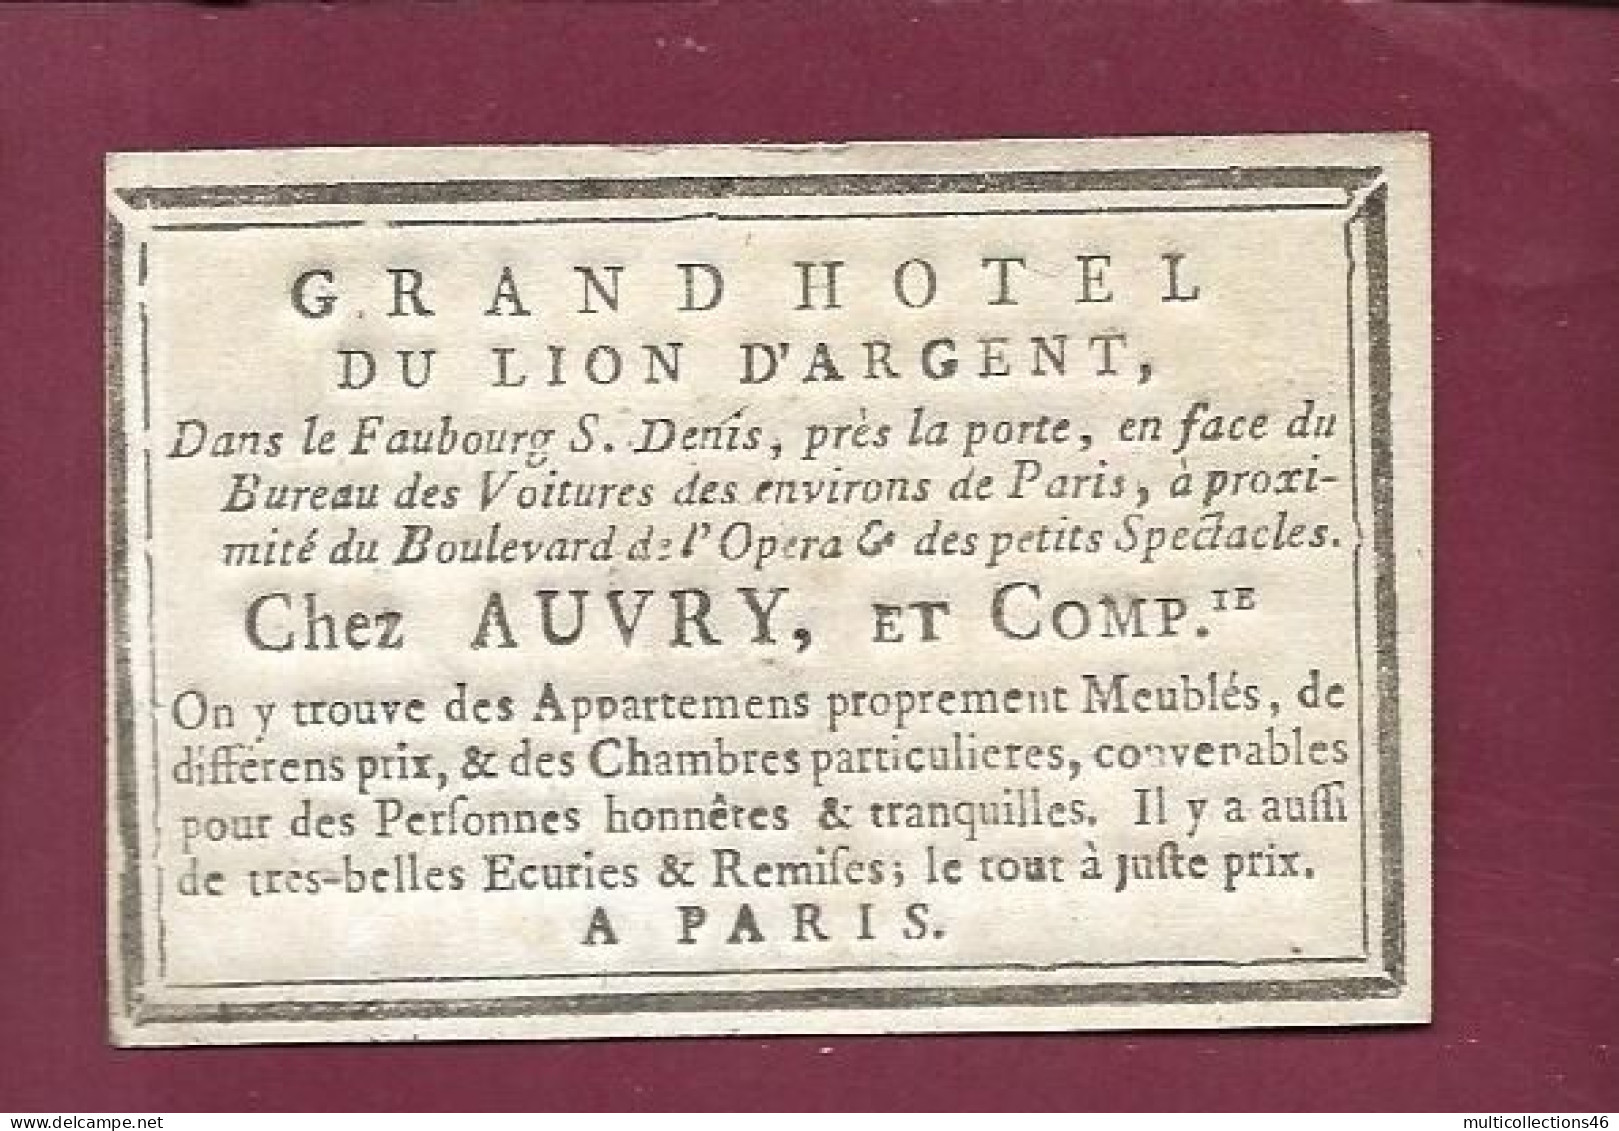 130524A - CARTE A JOUER ANCIENNE Carte De Visite Grand Hôtel Du Lion D'argent Chez AUVRY à PARIS - 8 De TREFLE - Cartes à Jouer Classiques